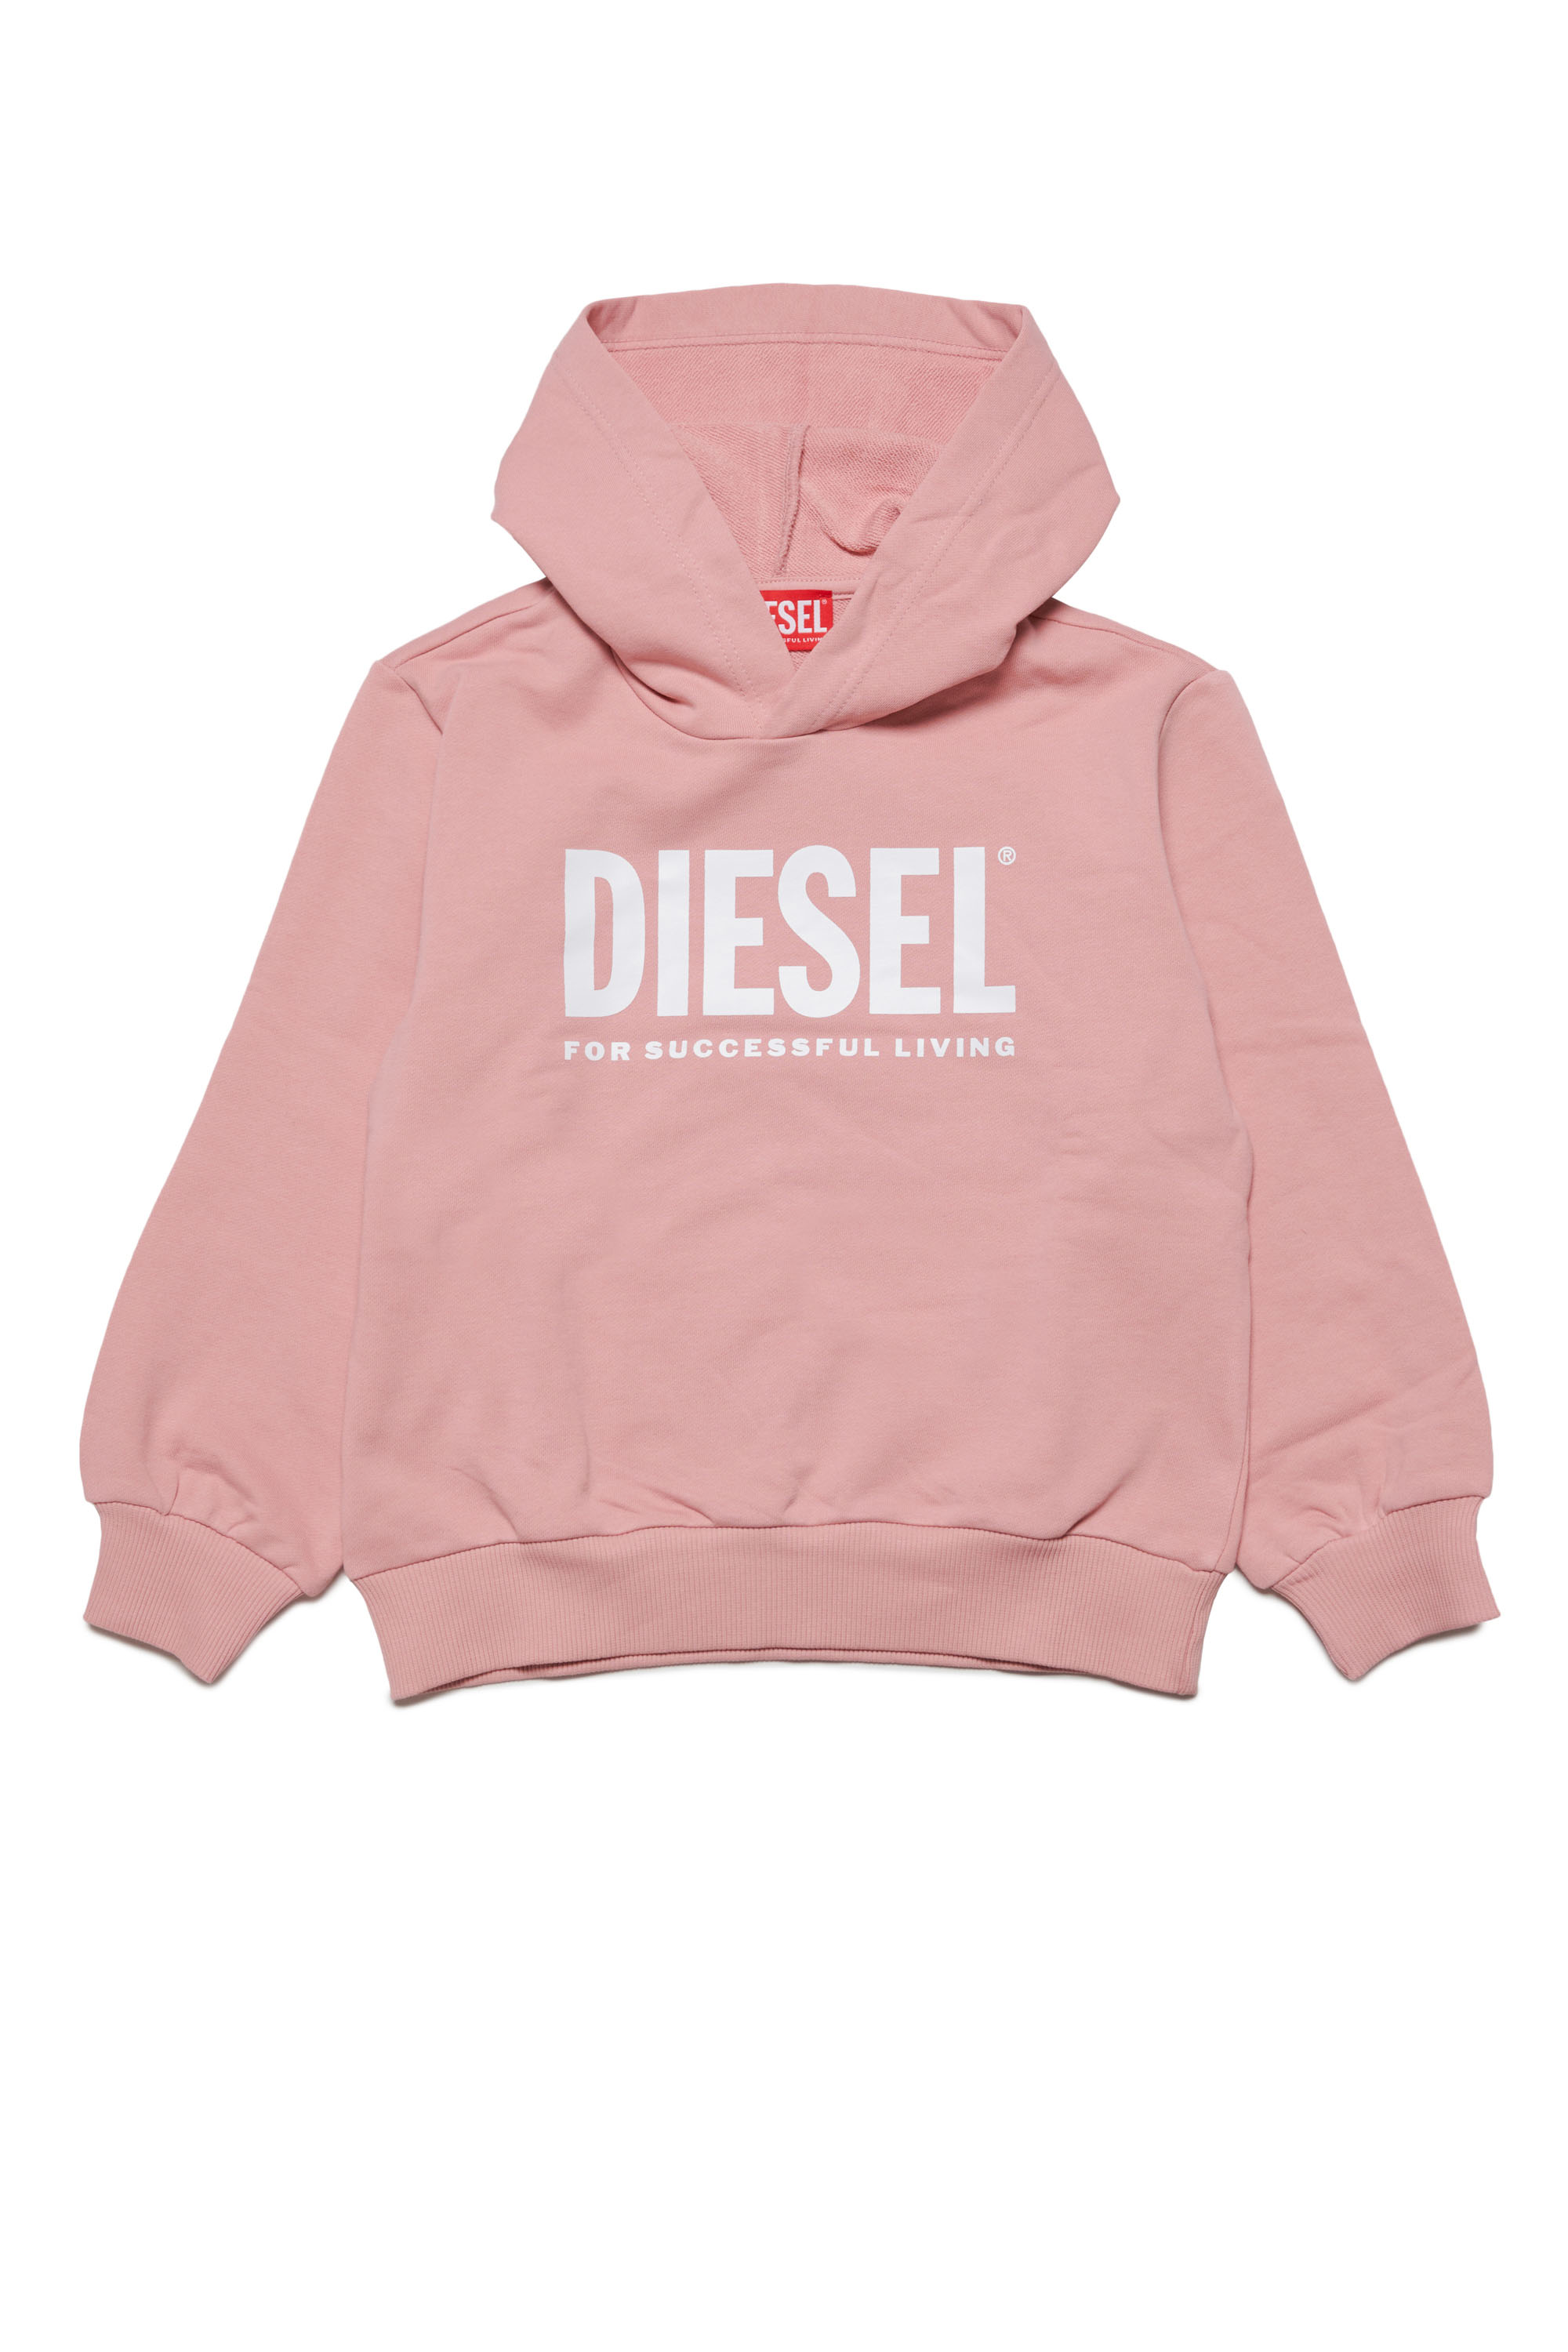 Diesel - LSFORT DI OVER HOOD, Rose - Image 1